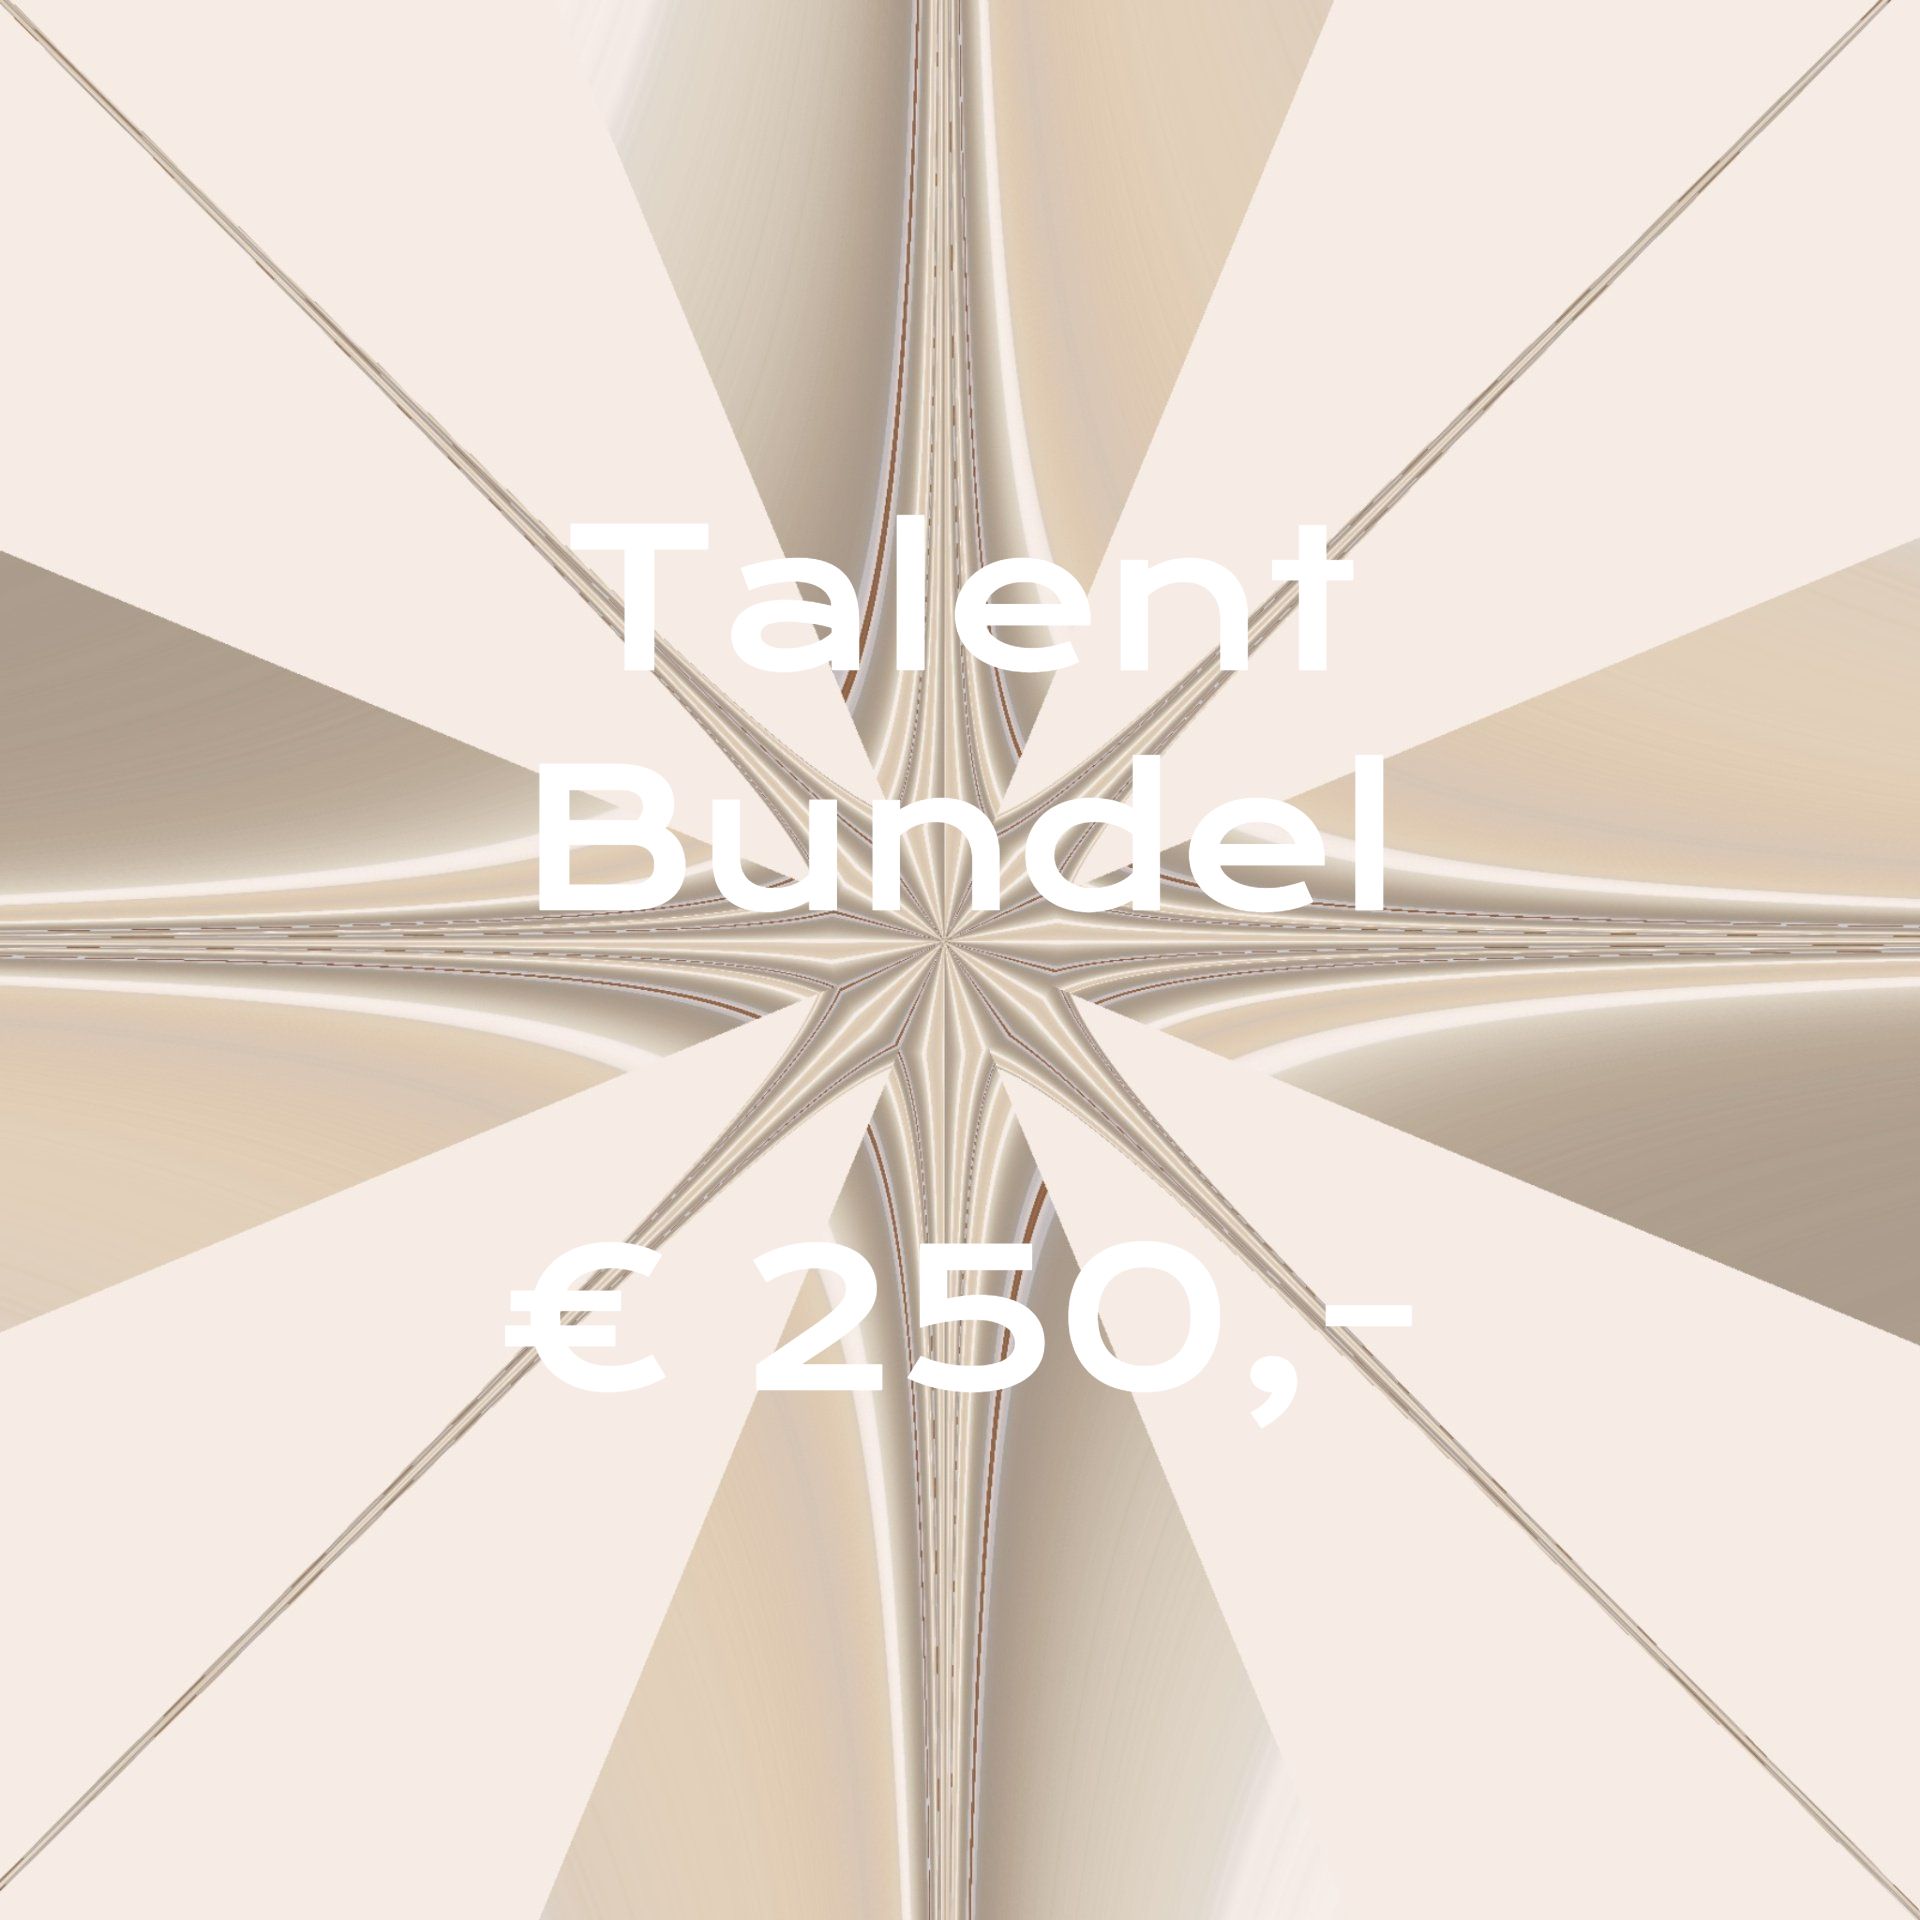 Een poster met daarop Talentbundel 250 euro